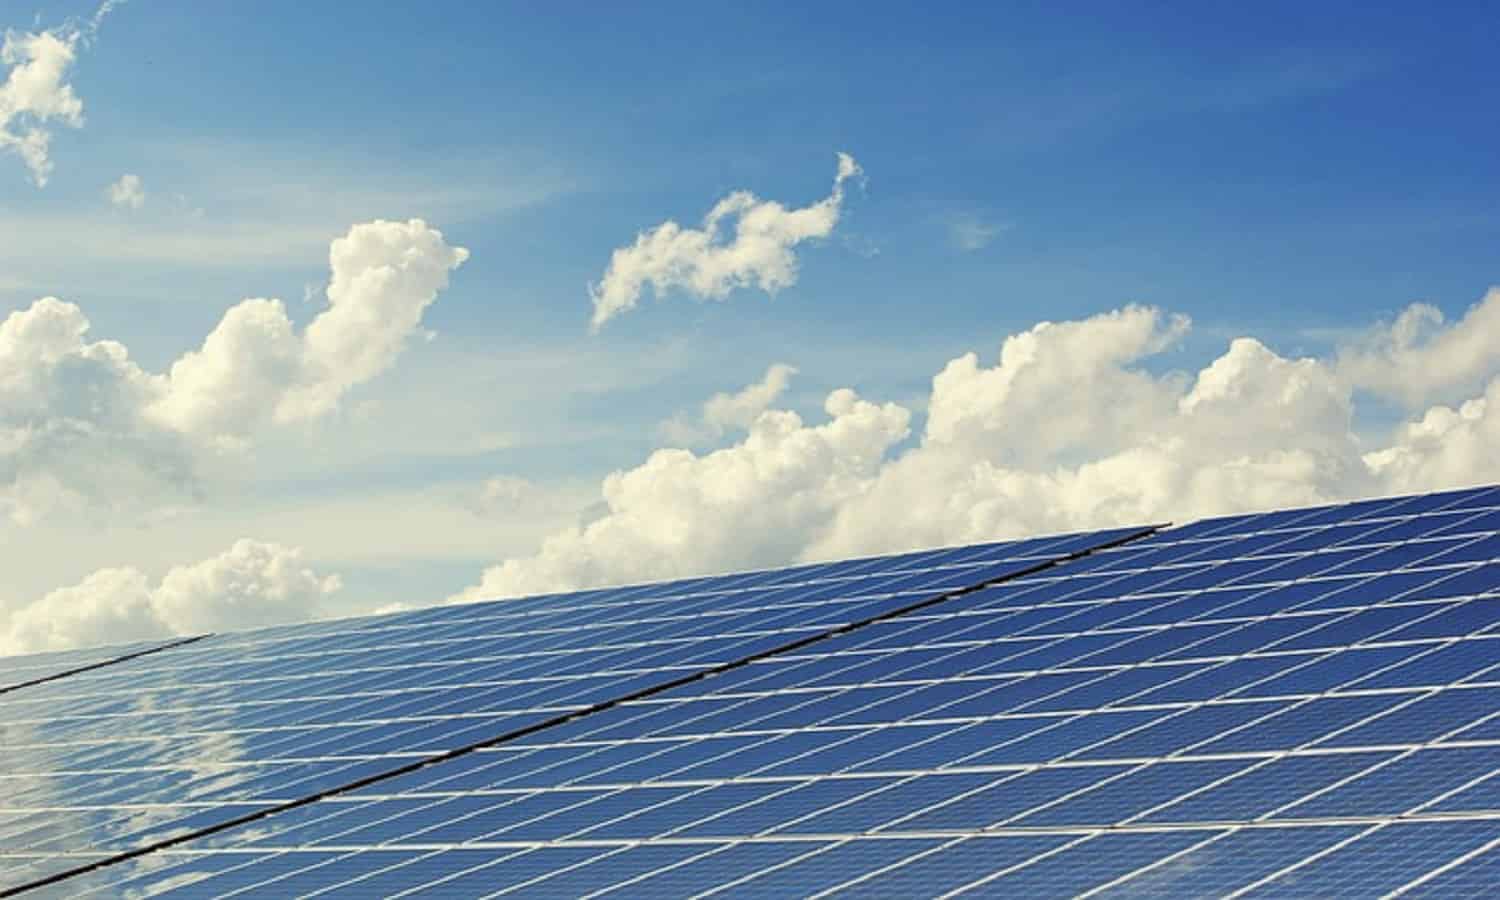 مصر الثانية إقليميًا من حيث الطاقات المولدة من مشروعات الطاقة الشمسية وطاقة الرياح